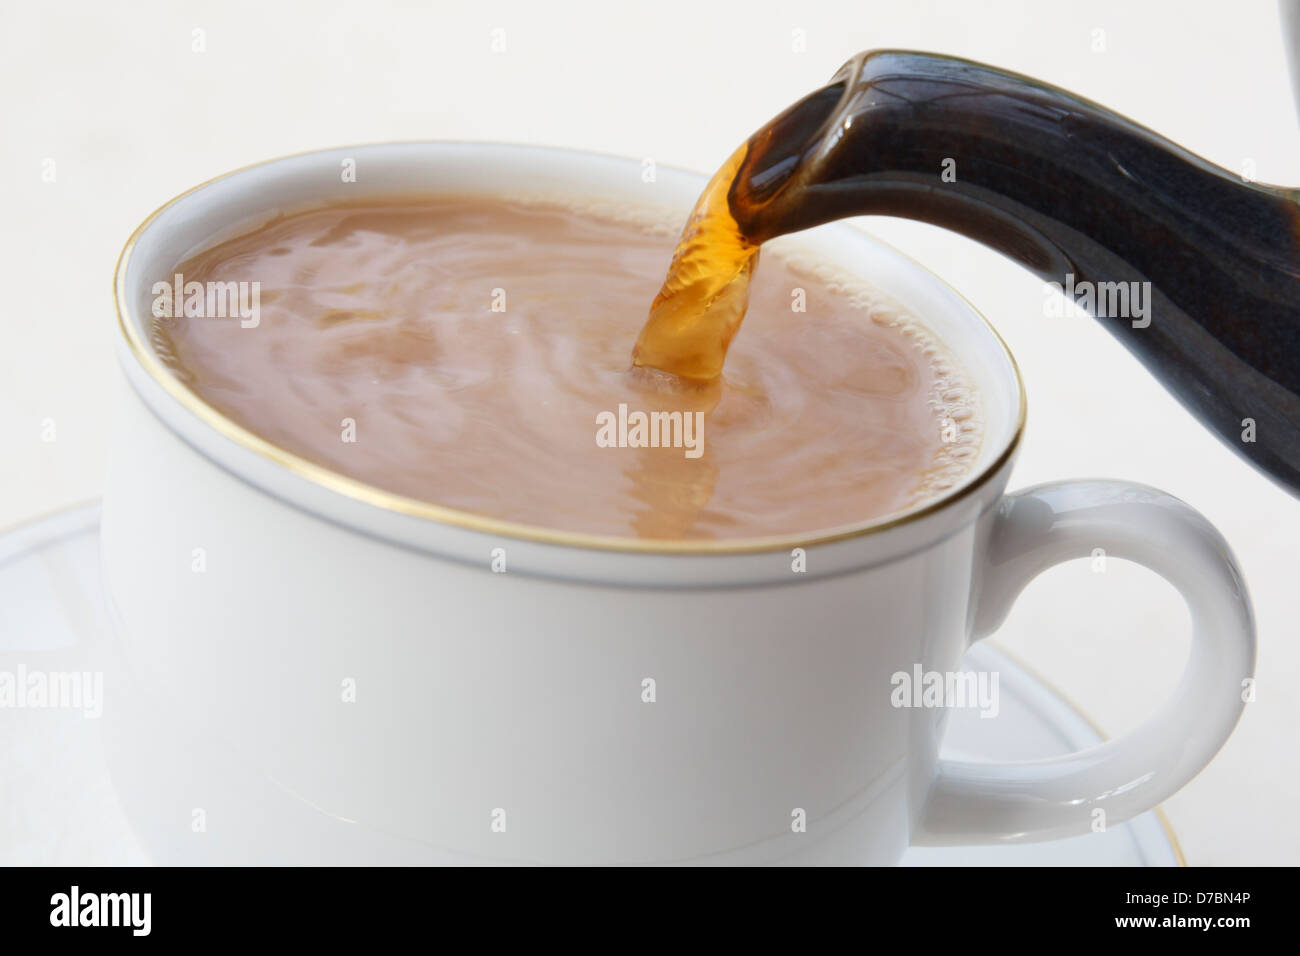 Machen Gießen einer traditionellen britischen englischen Tasse Tee aus einer Teekanne Auslauf in eine weiße porzellan Teetasse mit Milch in erster gesetzt. England Großbritannien Großbritannien Stockfoto